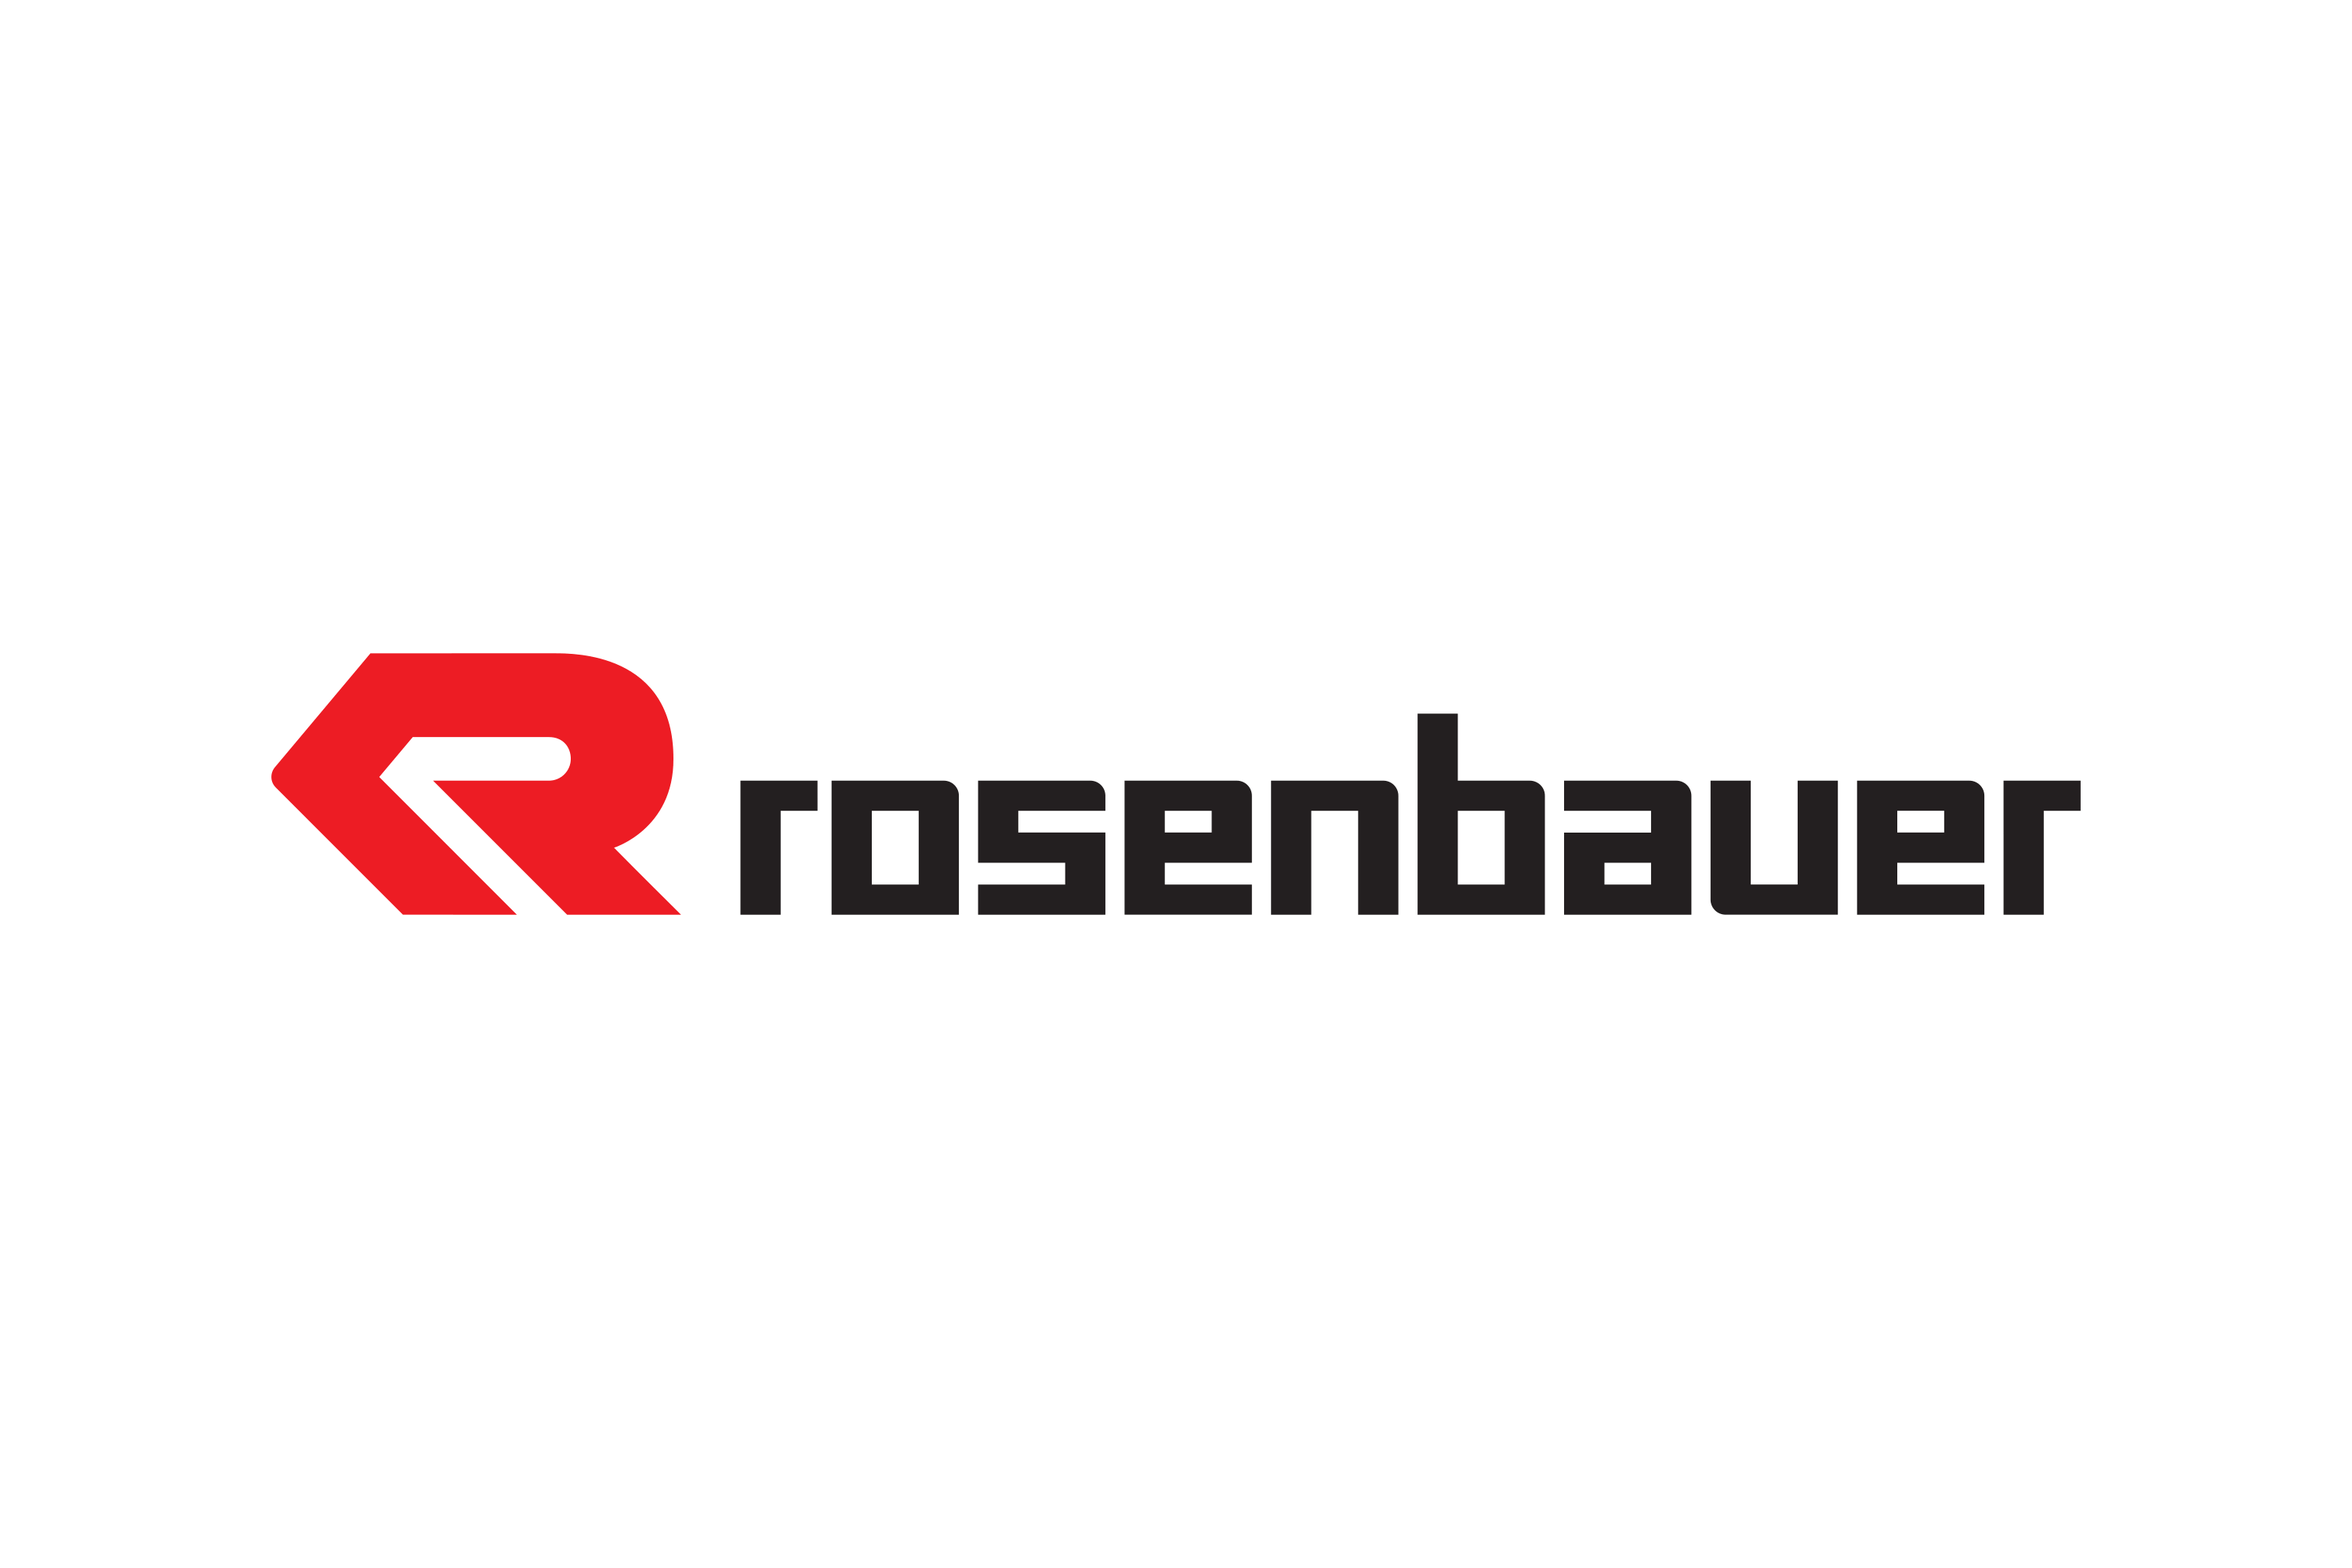 Commercial | Rosenbauer Group